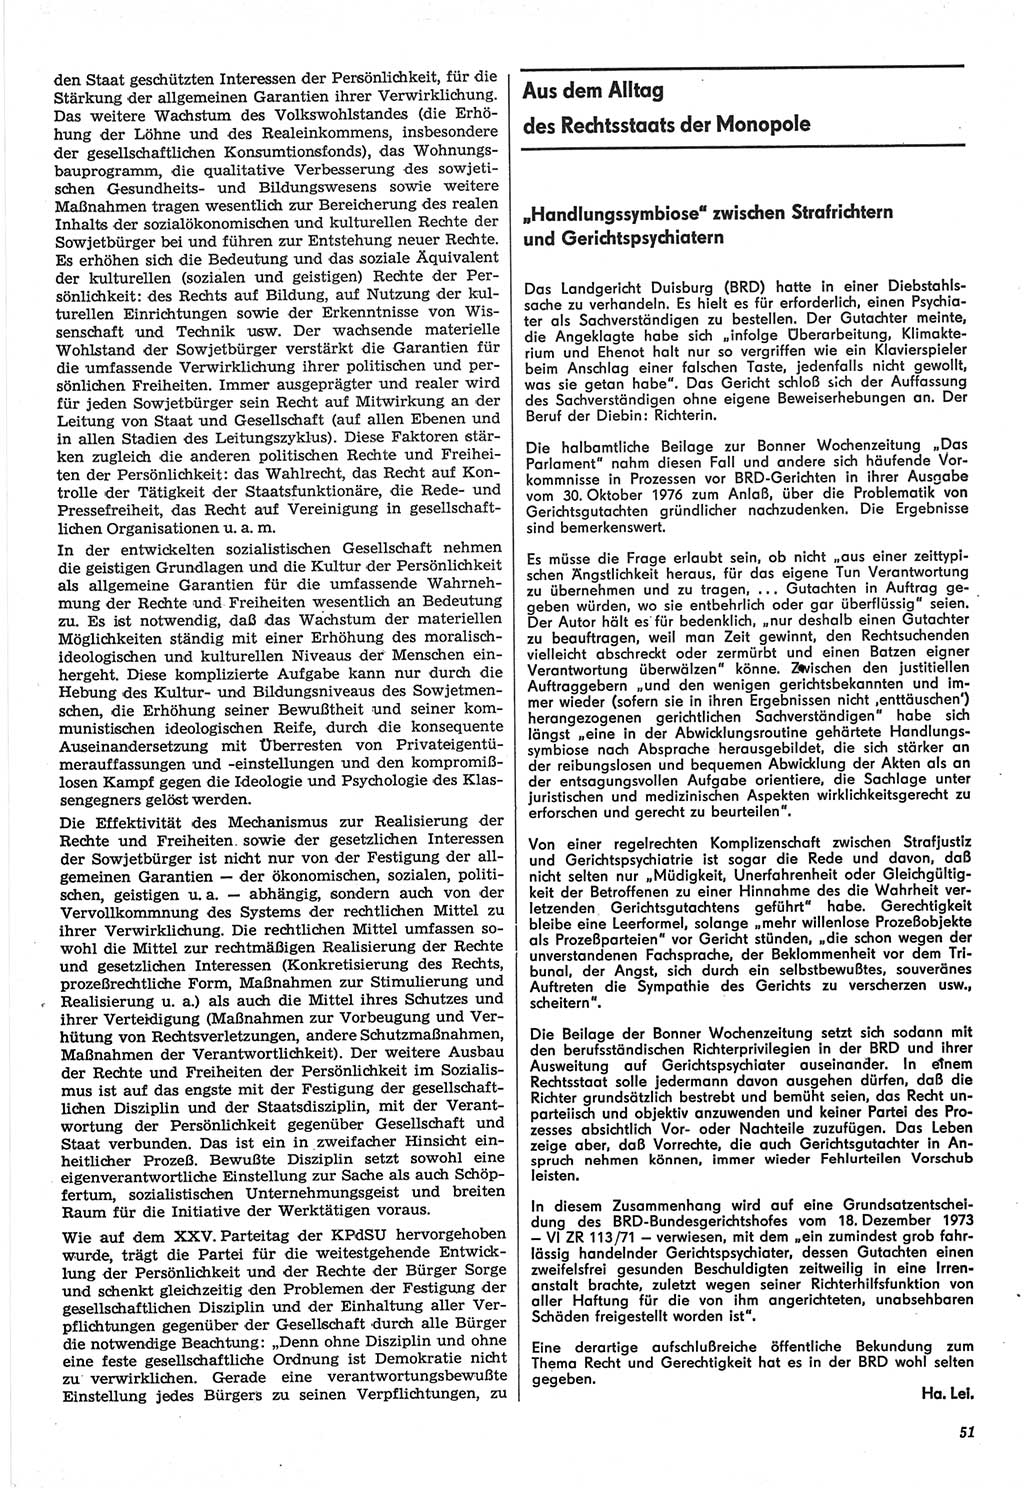 Neue Justiz (NJ), Zeitschrift für Recht und Rechtswissenschaft-Zeitschrift, sozialistisches Recht und Gesetzlichkeit, 31. Jahrgang 1977, Seite 51 (NJ DDR 1977, S. 51)